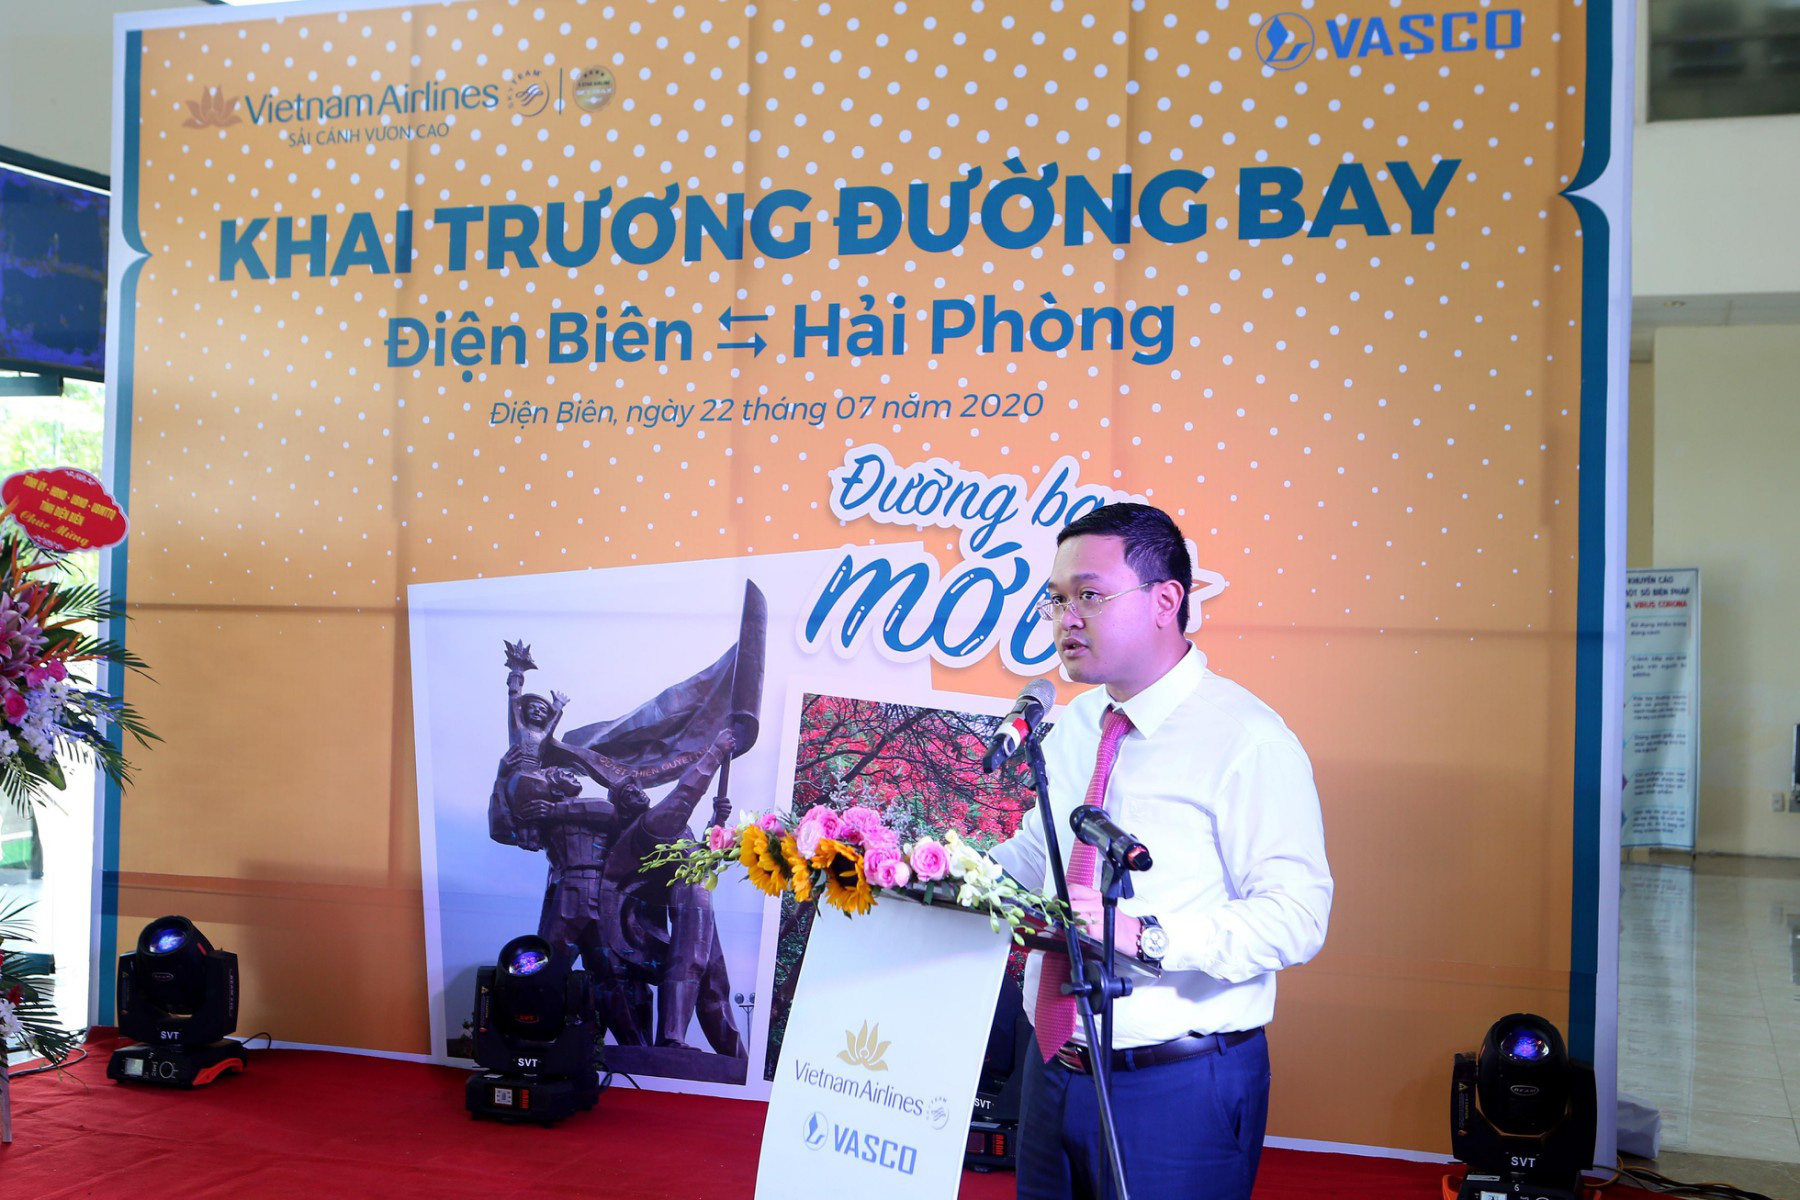 Ông Nguyễn Sỹ Thanh, Phó Giám đốc Chi nhánh Vietnam Airlines khu vực Miền Bắc, phát biểu trong lễ khai trương tại Điện Biên.